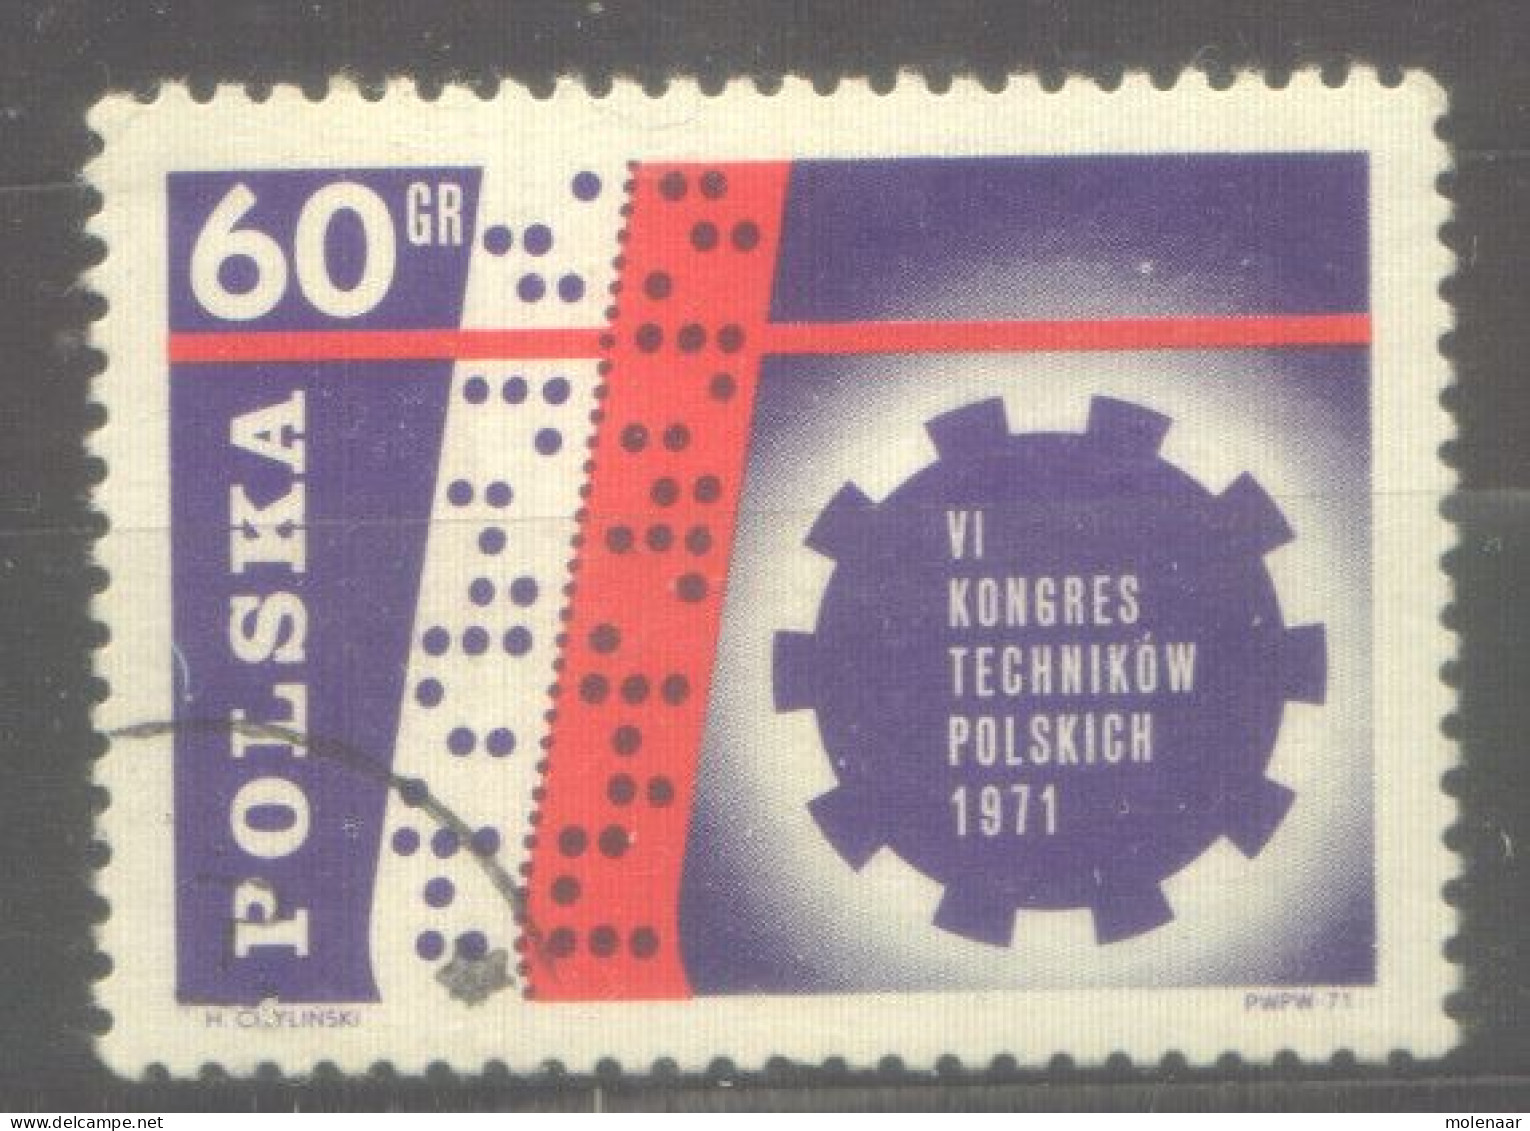 Postzegels > Europa > Polen > 1944-.... Republiek > 1971-80 > Gebruikt 2097 (12057) - Usados